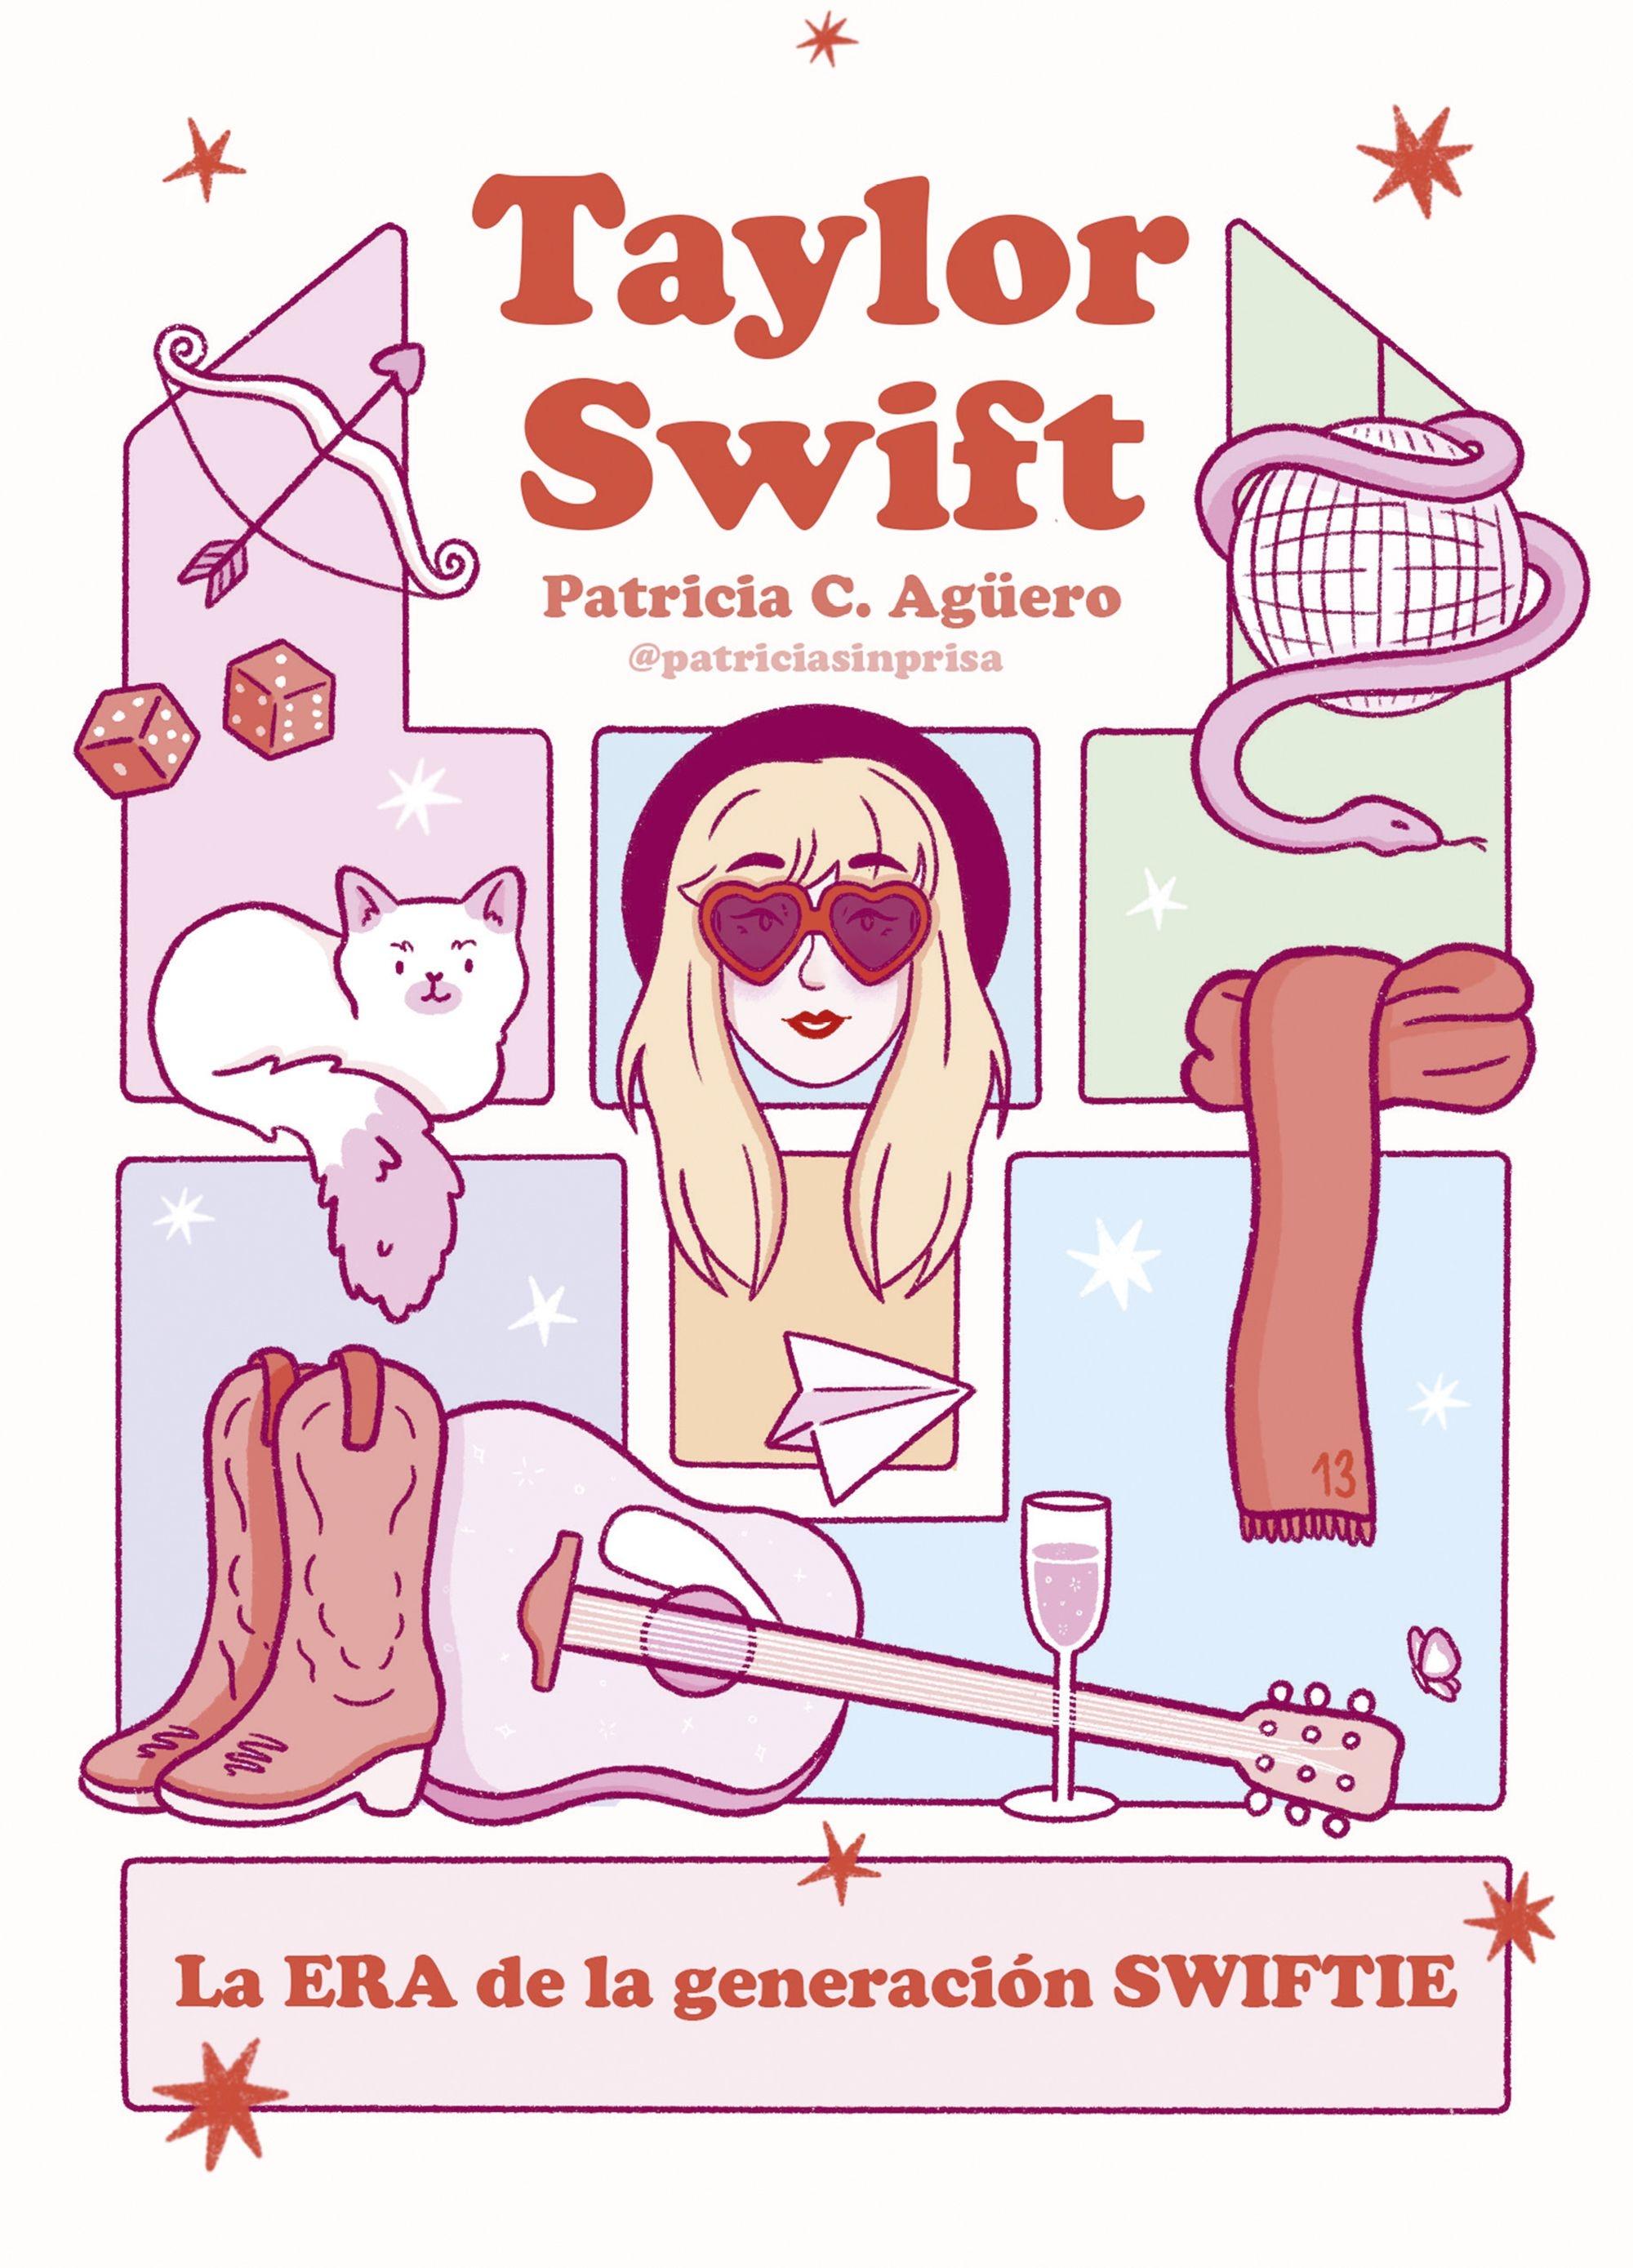 Taylor Swift "La era de la generación swiftie"